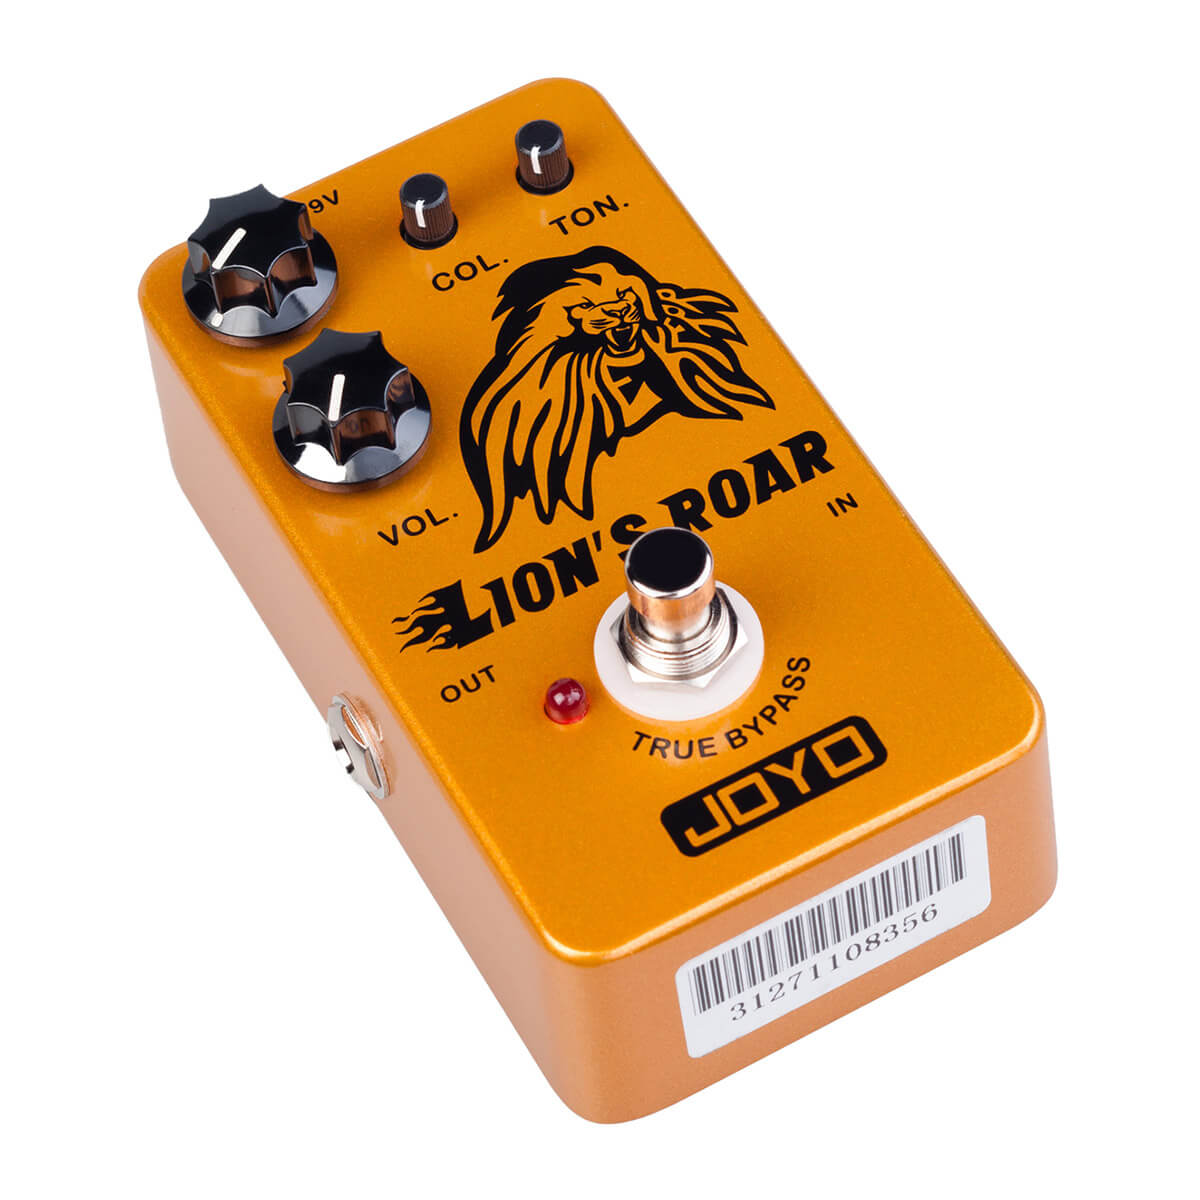 Joyo JF-MK Lion's Roar guitar-effekt-pedal